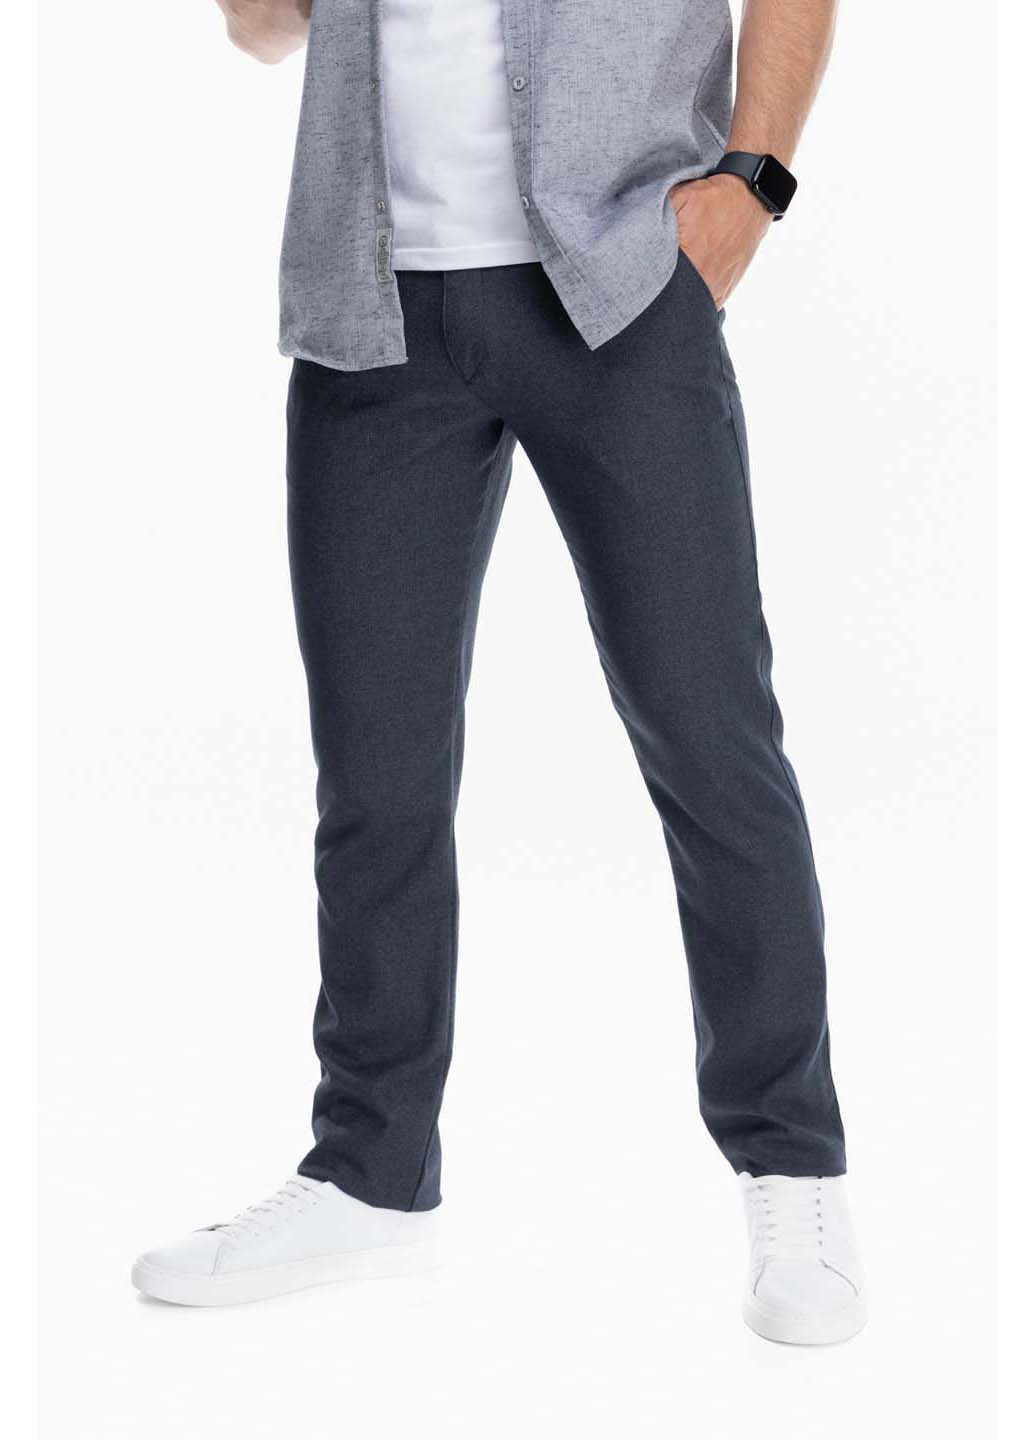 Темно-синие кэжуал демисезонные брюки Redpolo